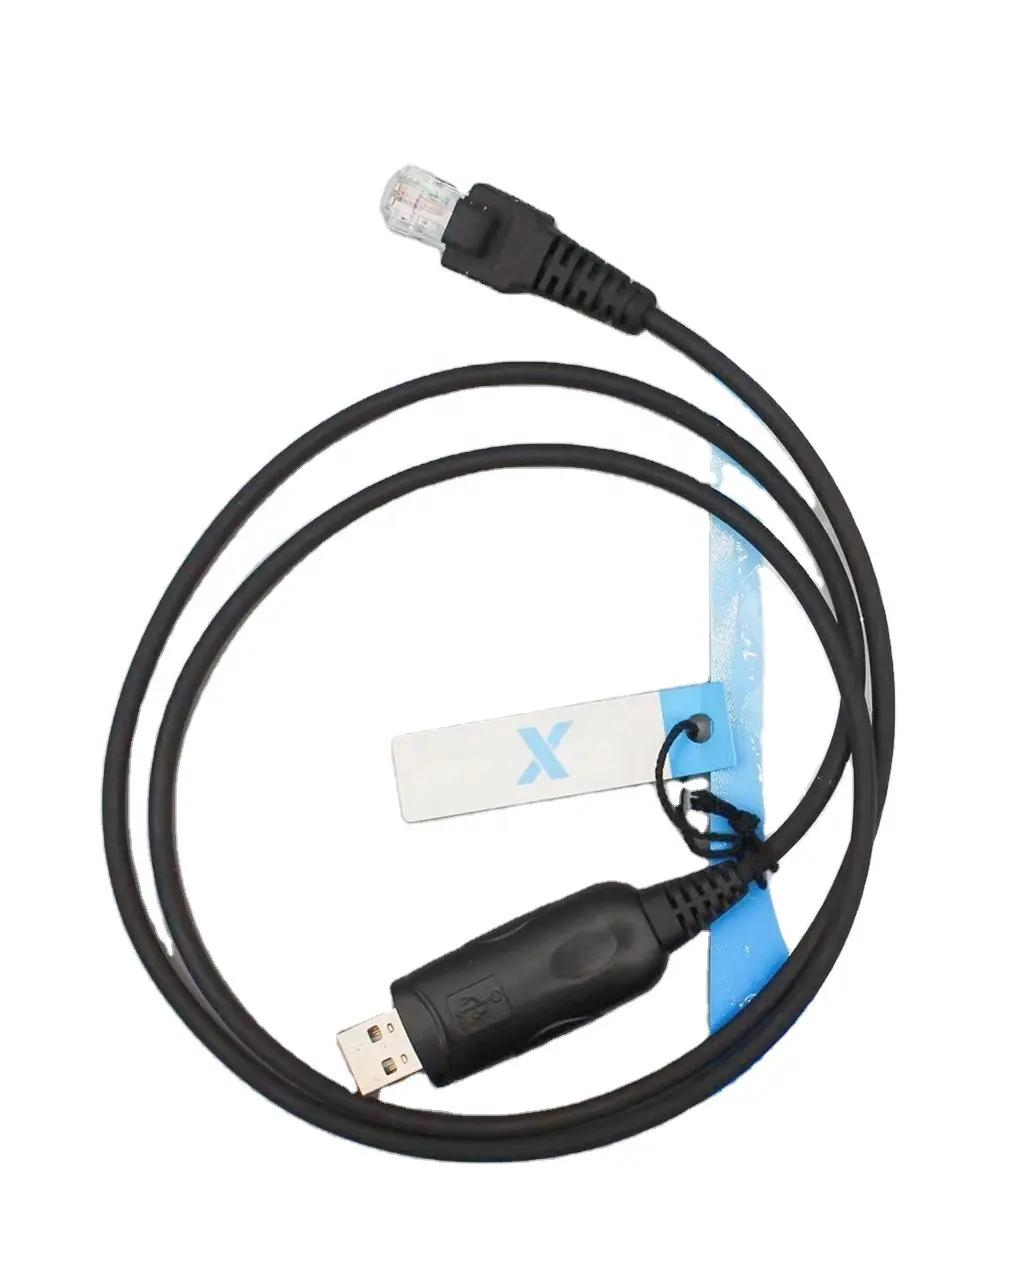 USB-Programmier kabel Radio zubehör für Auto/Radio GM338, GM3188, GM300, GM3688, GM300 GM360 GM398 GM950 GM380 GM3188 EM200